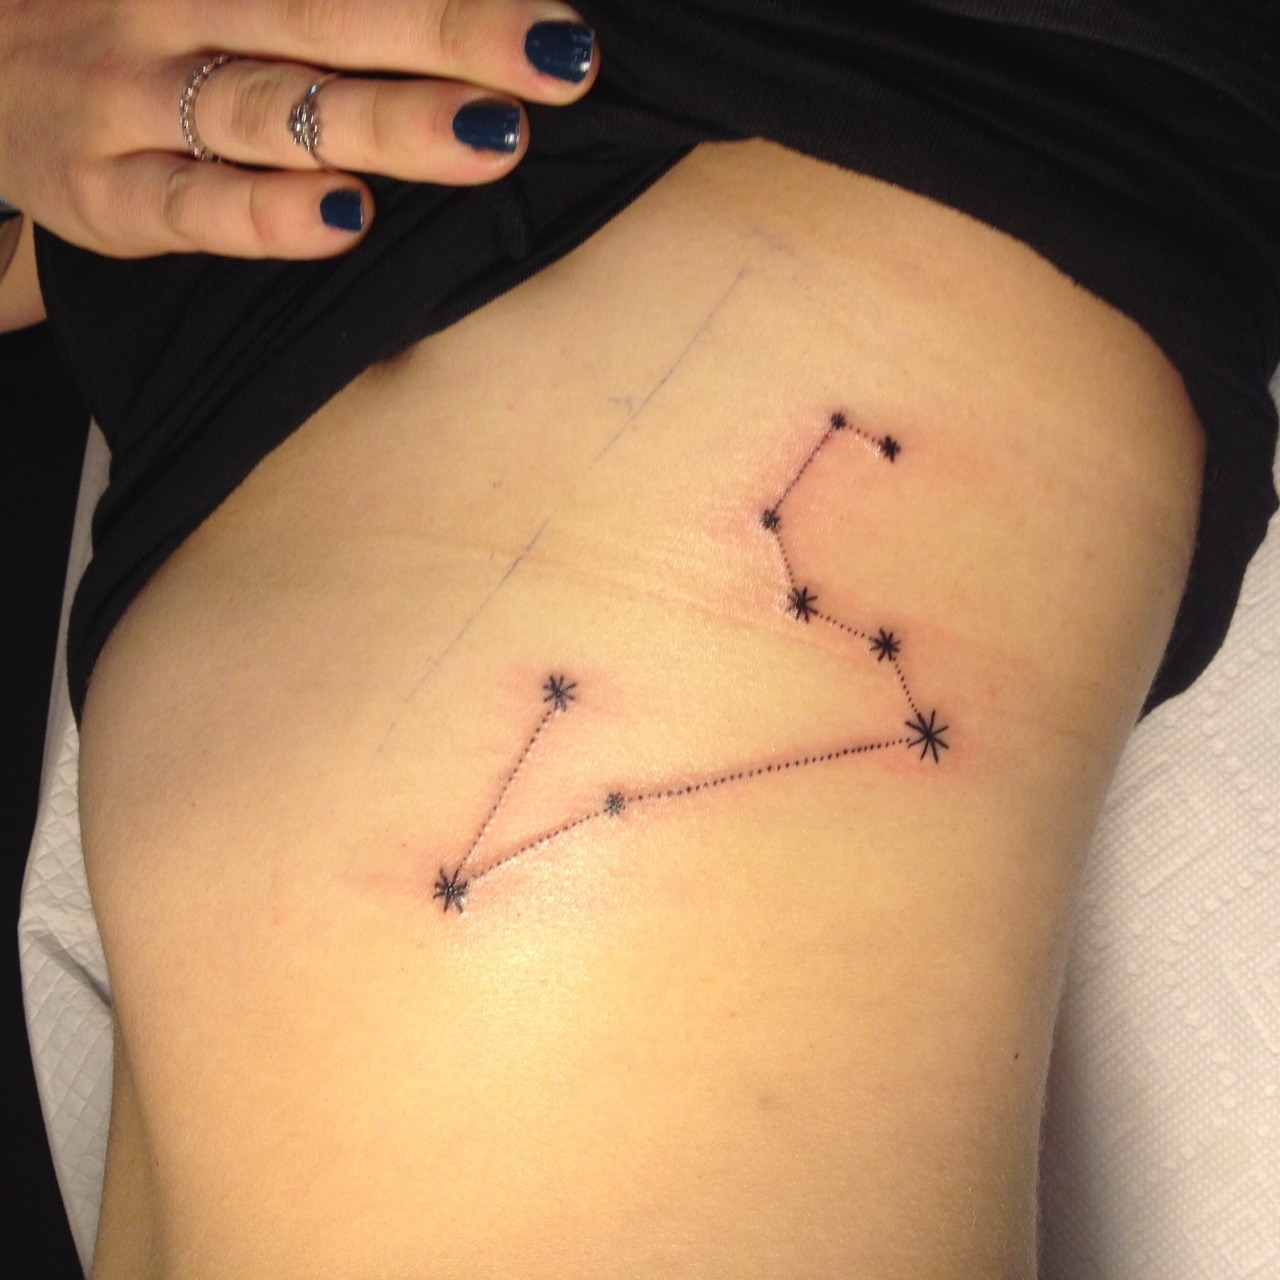 BLACK HOUSE TATTOO on Tumblr: Souhvězdí tetování / Constellations tattoo  Souhvězdí minimalistické tetování na stehně pro ženu. #blackhousetattoo  #bhtprg...